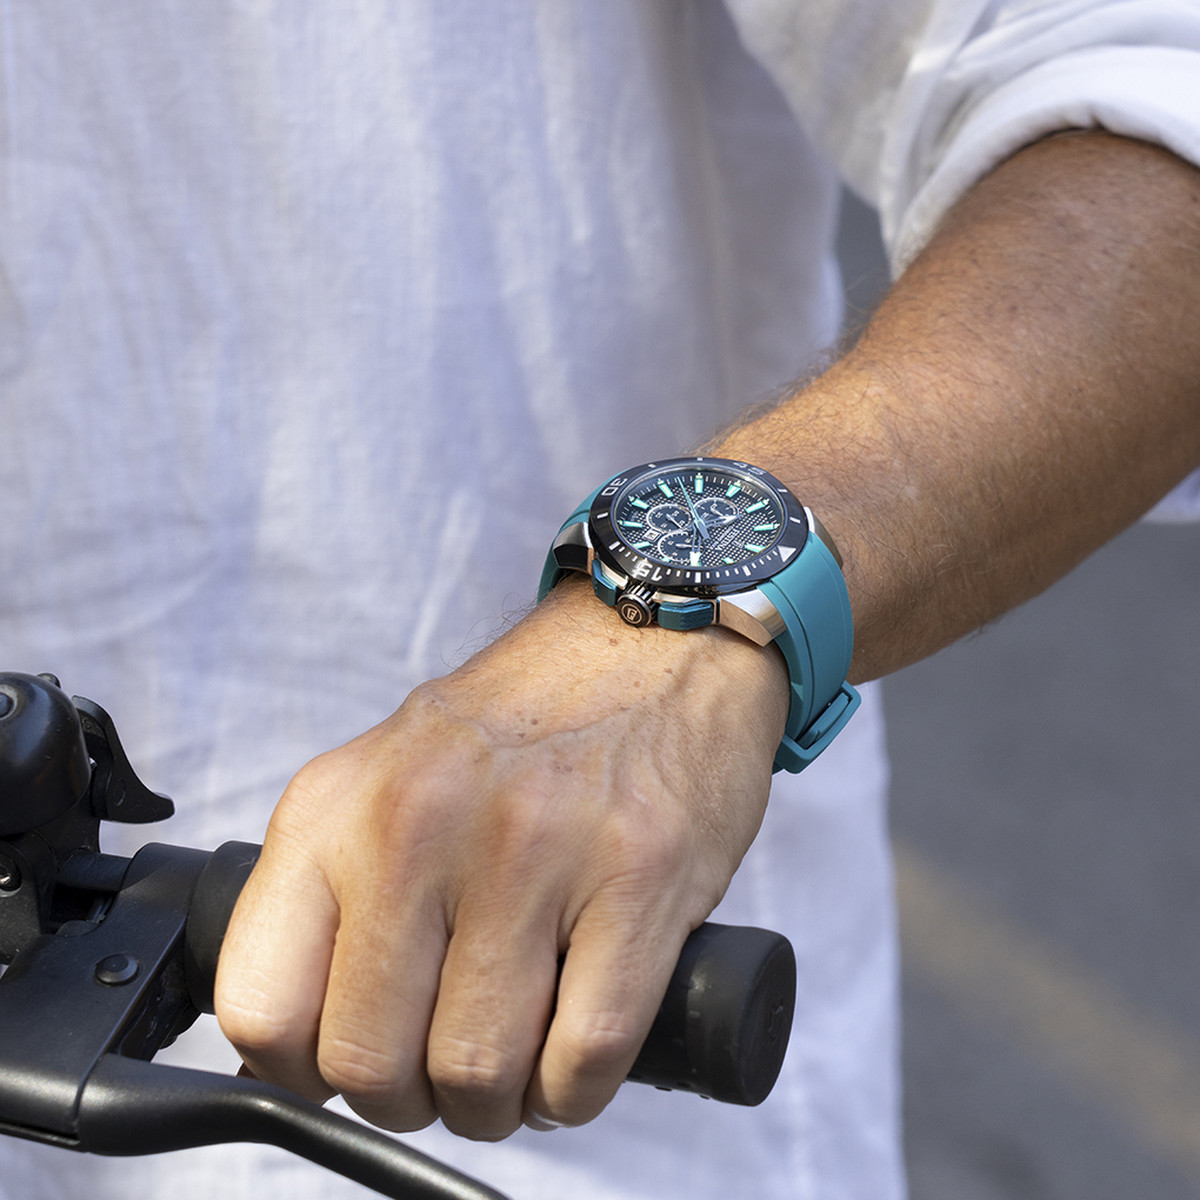 Montre FESTINA Chronobike homme chronographe acier bracelet caoutchouc bleu turquoise - vue porté 1